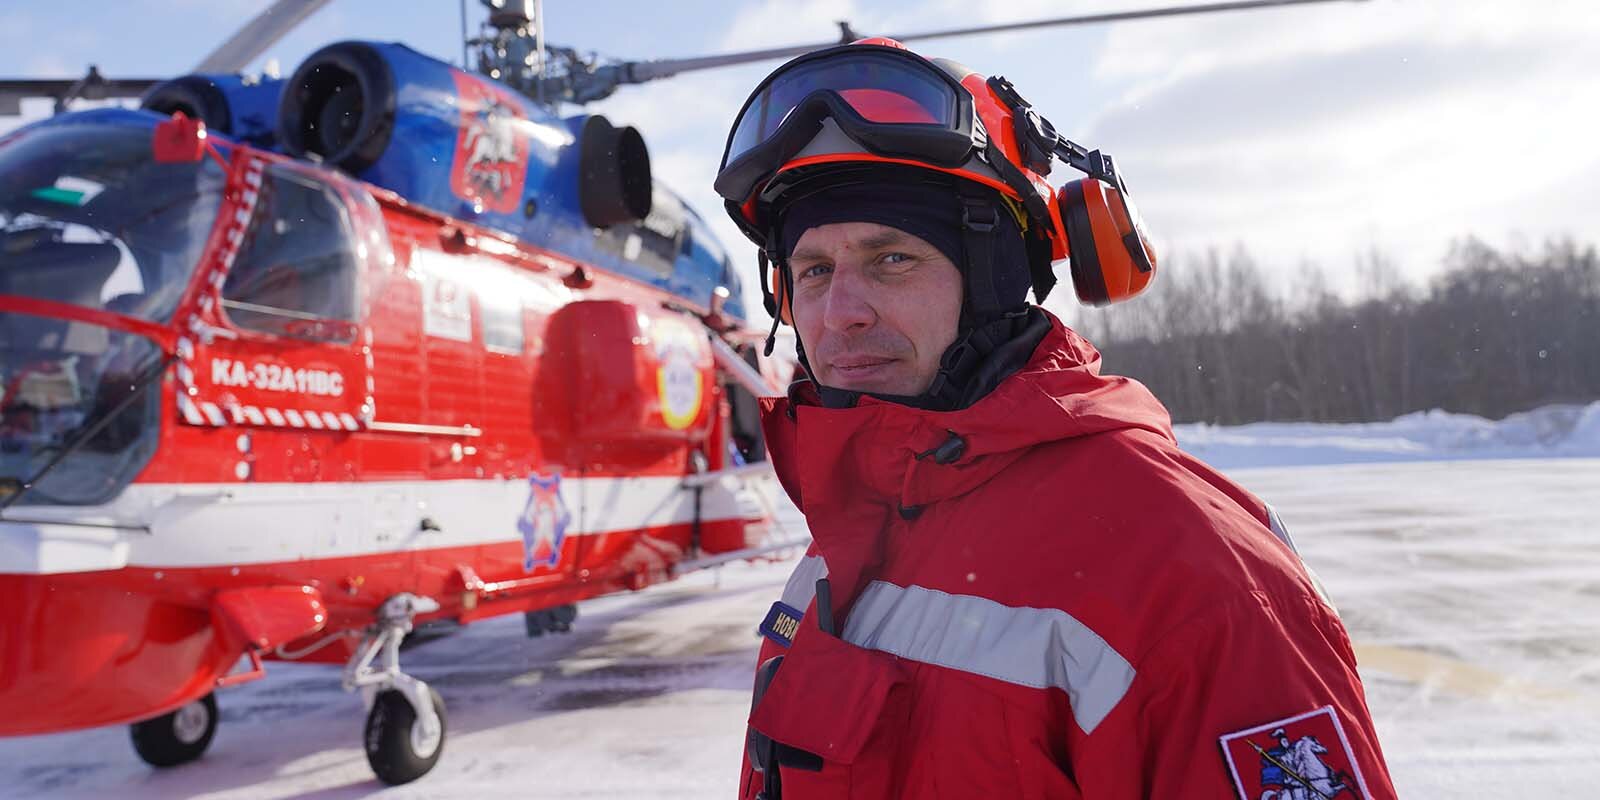 Ангелы-спасатели: как сотрудники Московского авиационного центра выручают из беды